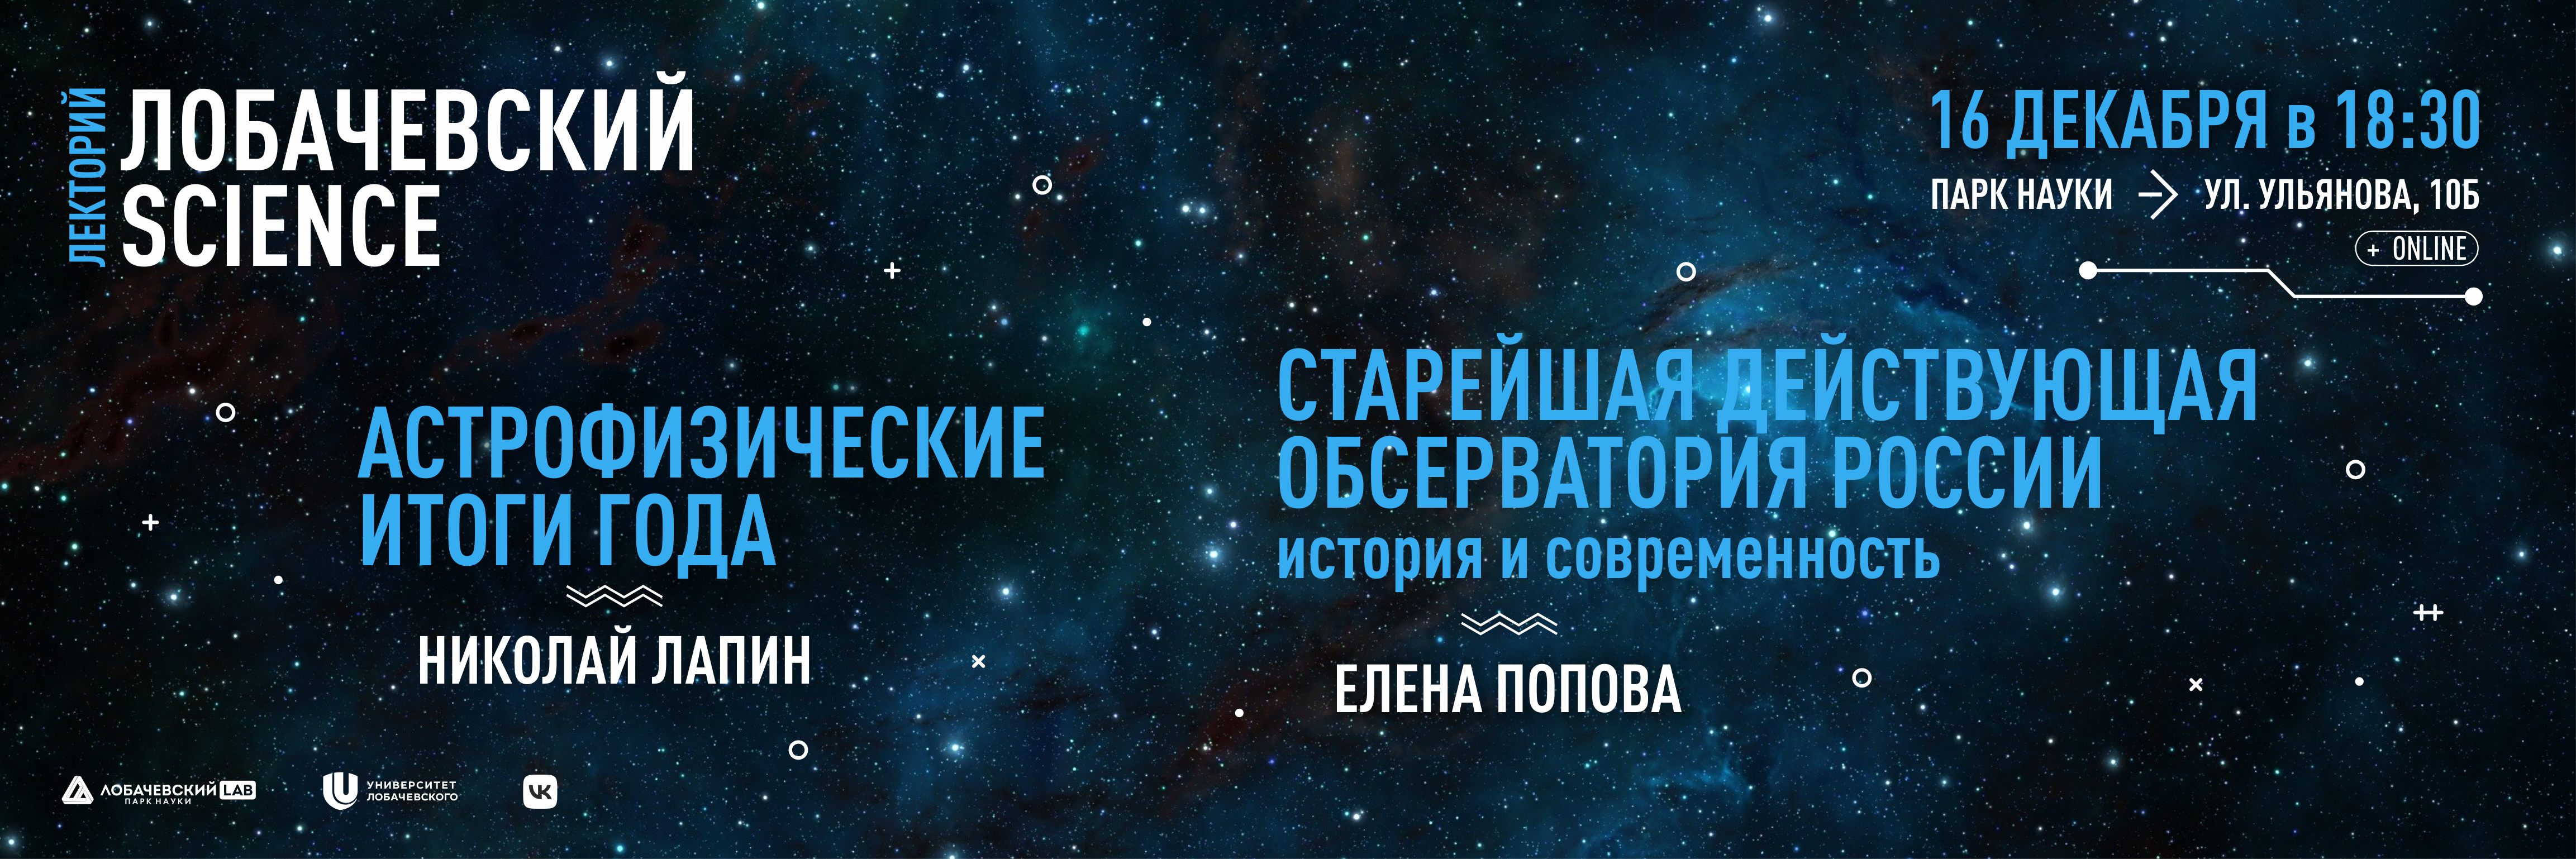 Подробнее о статье Лобачевский Science: астрофизика и астрономия